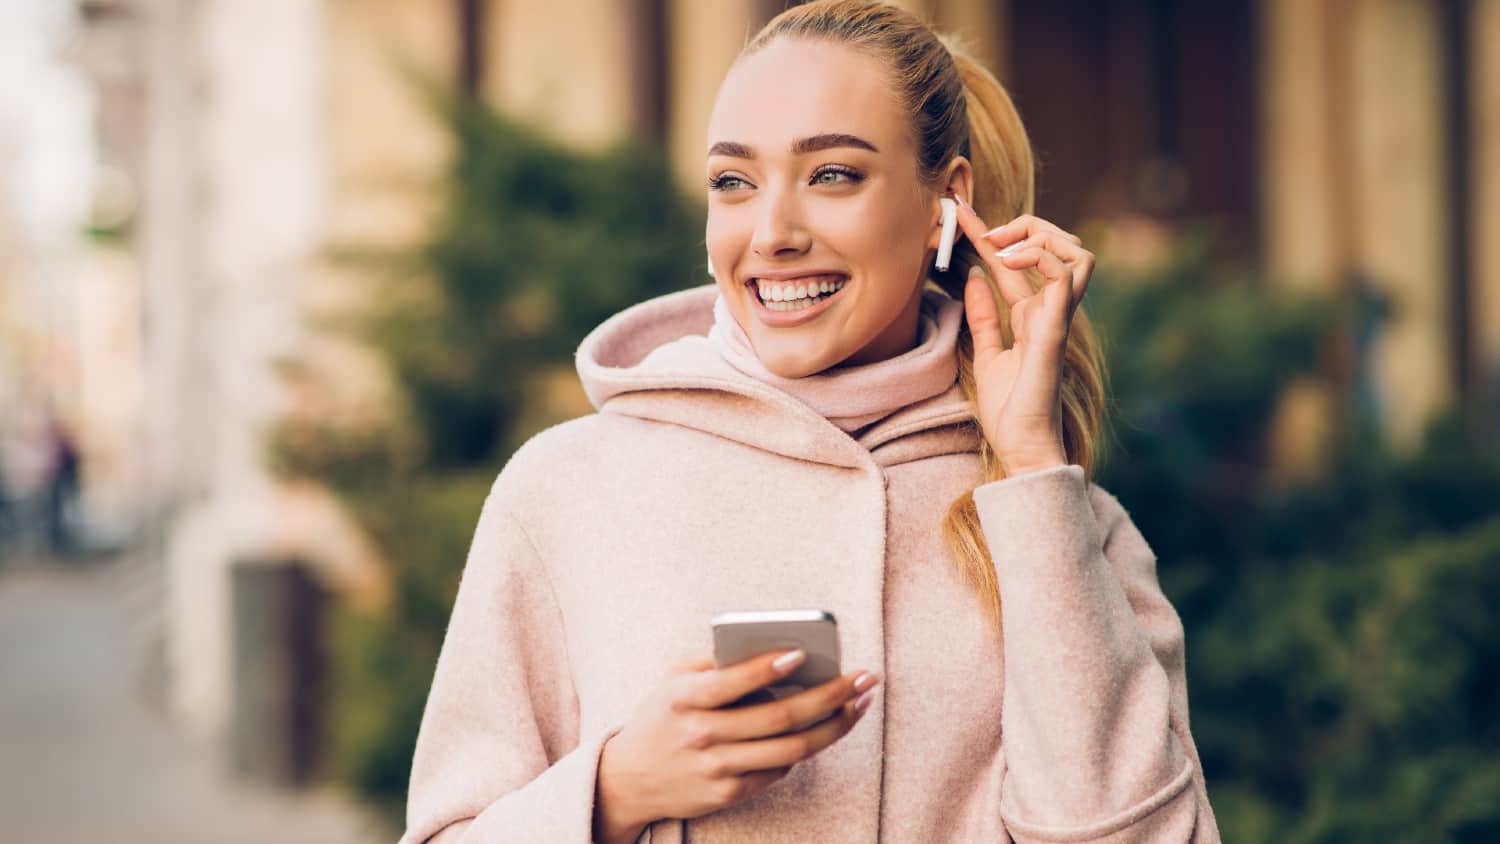 कान में एयरपॉड्स लगाए आईफोन पकड़े हुए मुस्कुराती हुई सफेद महिला